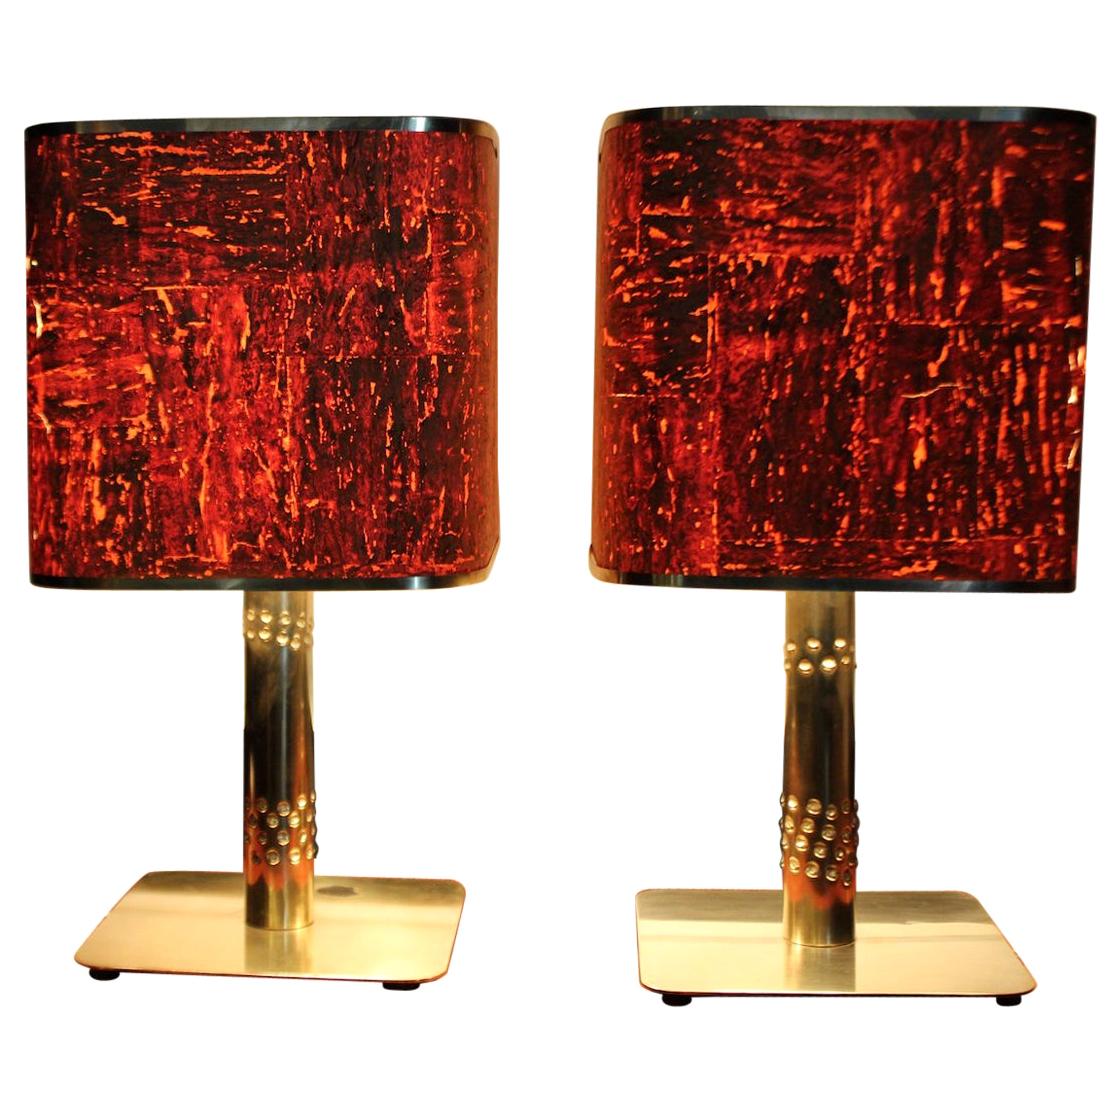 1970er Jahre Paar Tischlampen Messing Rot Orange Kork beschichtet